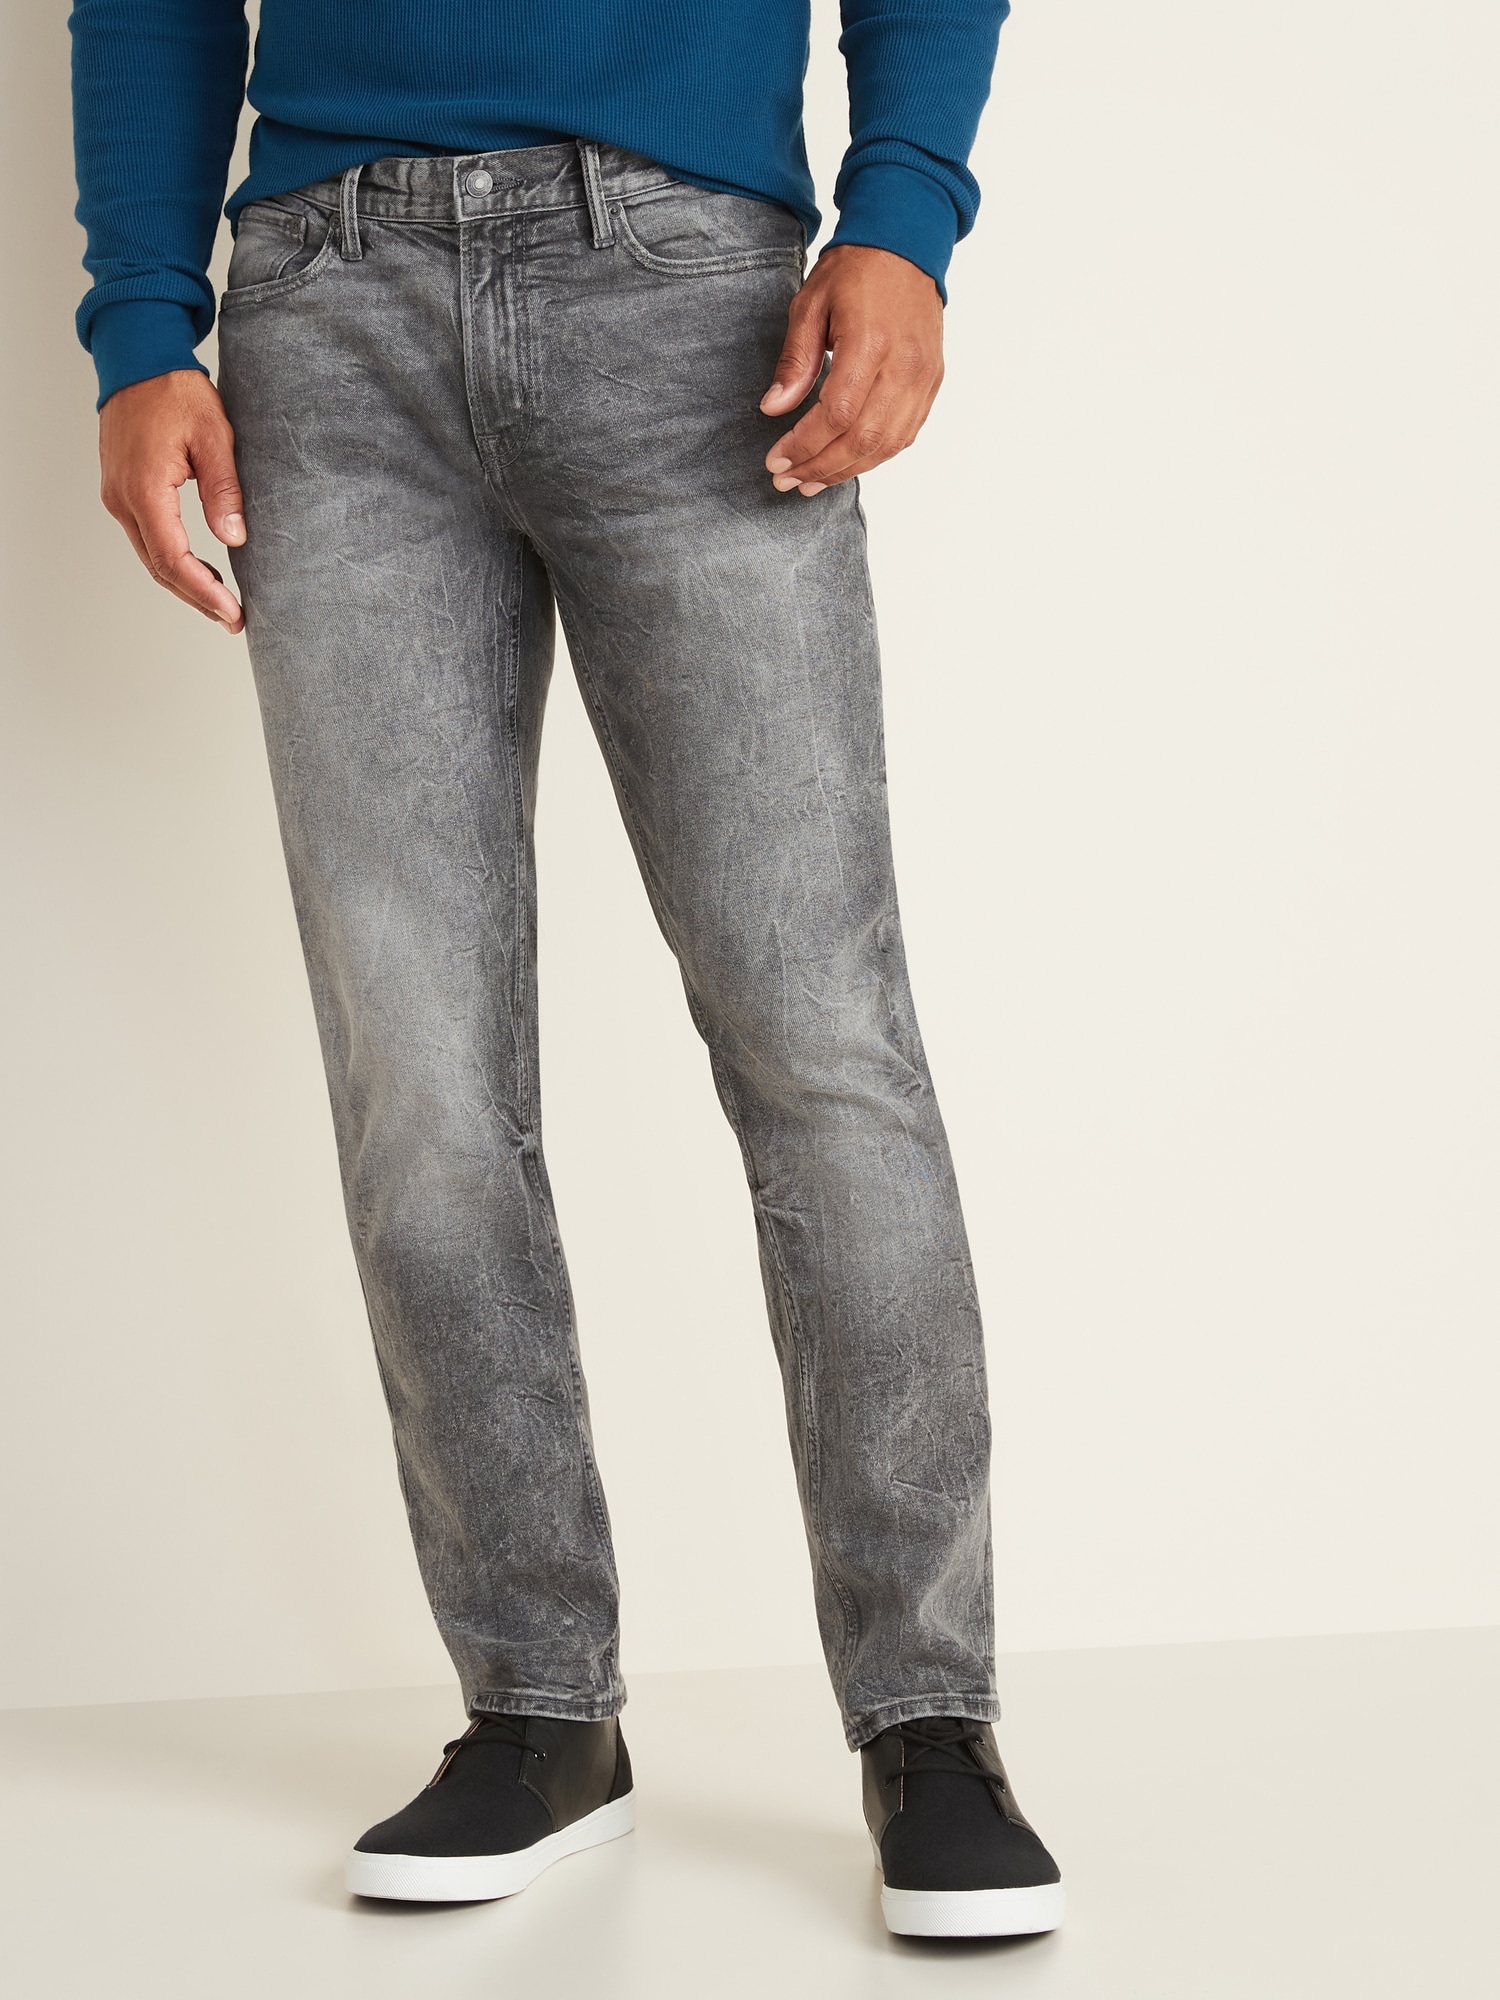 Slim Built-In Flex Jeans For Men